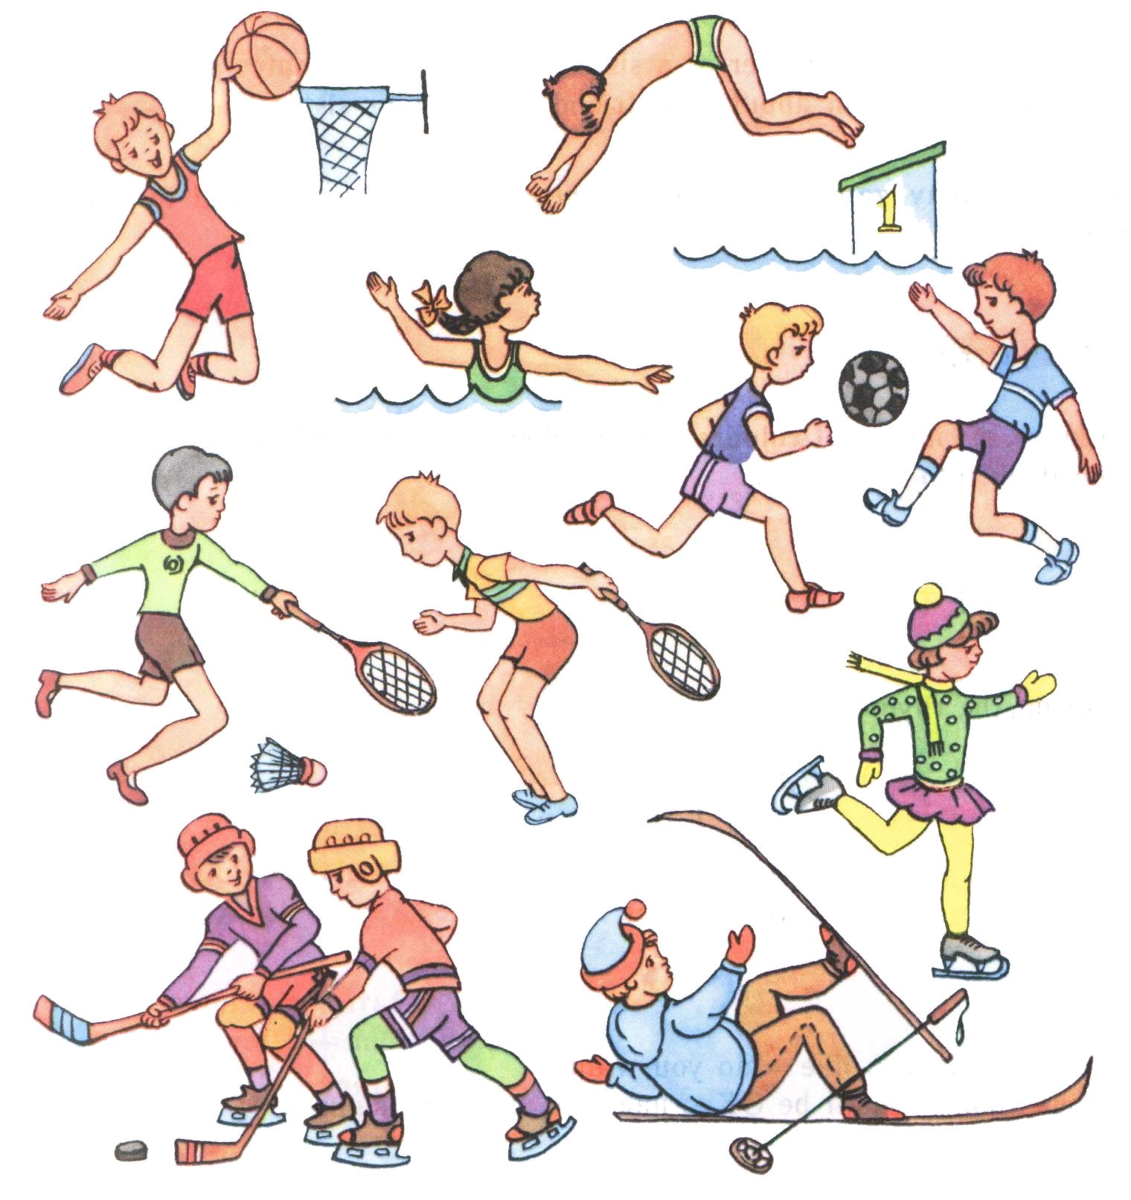 Игры движение и внимание. Занятие спортом рисунок. Физическая культура. Спортивные рисунки для детей. Занятие спортом картинки для детей.